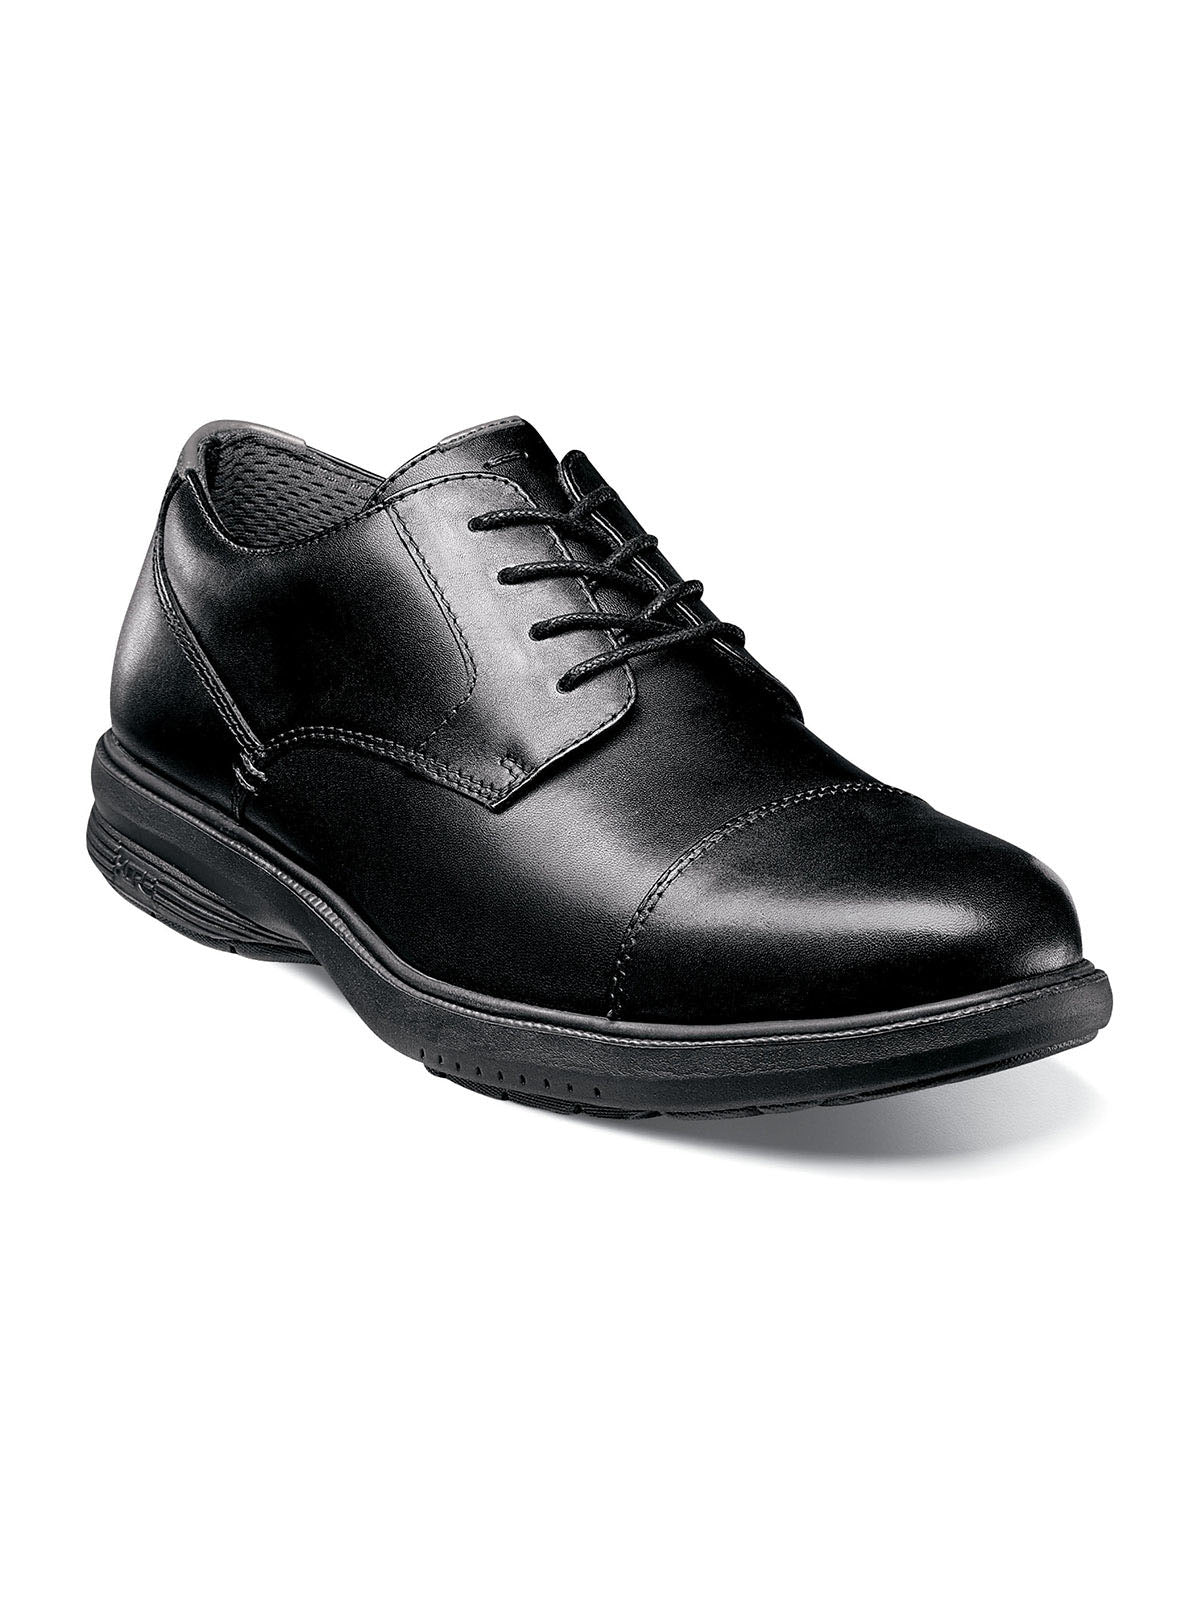 Nunn Bush Melvin Street Cap Toe Oxford Shoes in Black - Wide Width